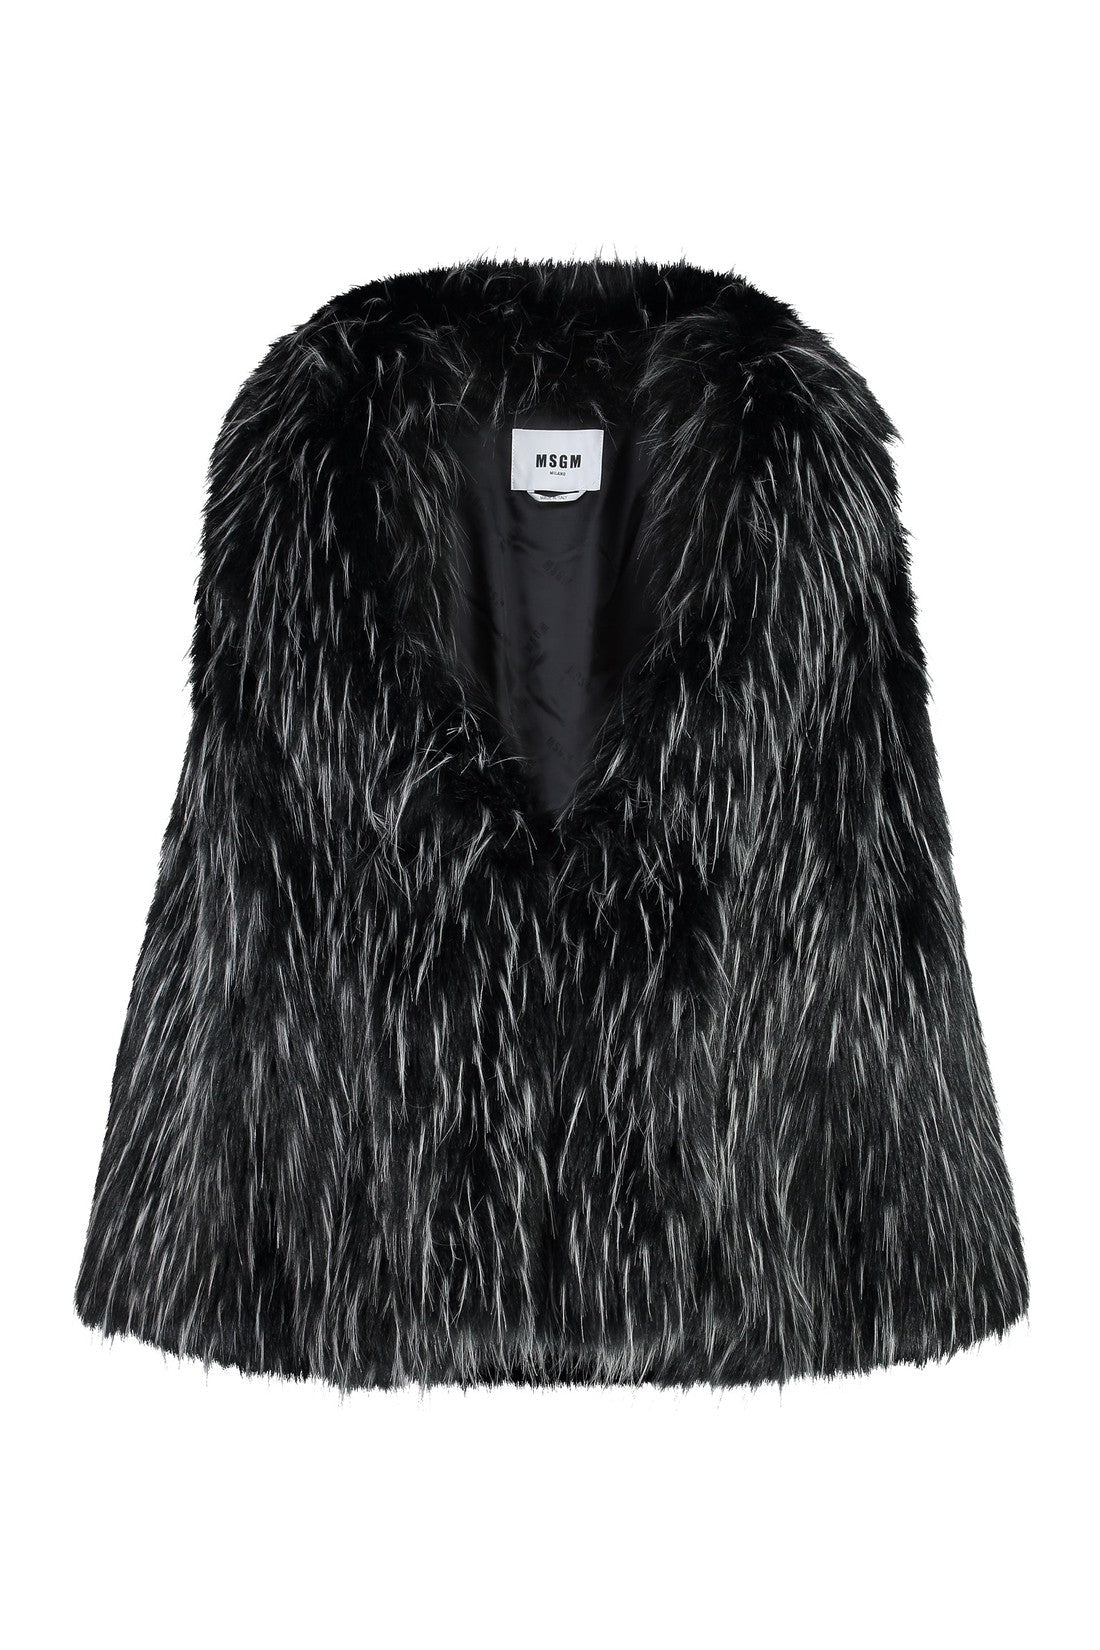 MSGM-OUTLET-SALE-Faux fur coat-ARCHIVIST